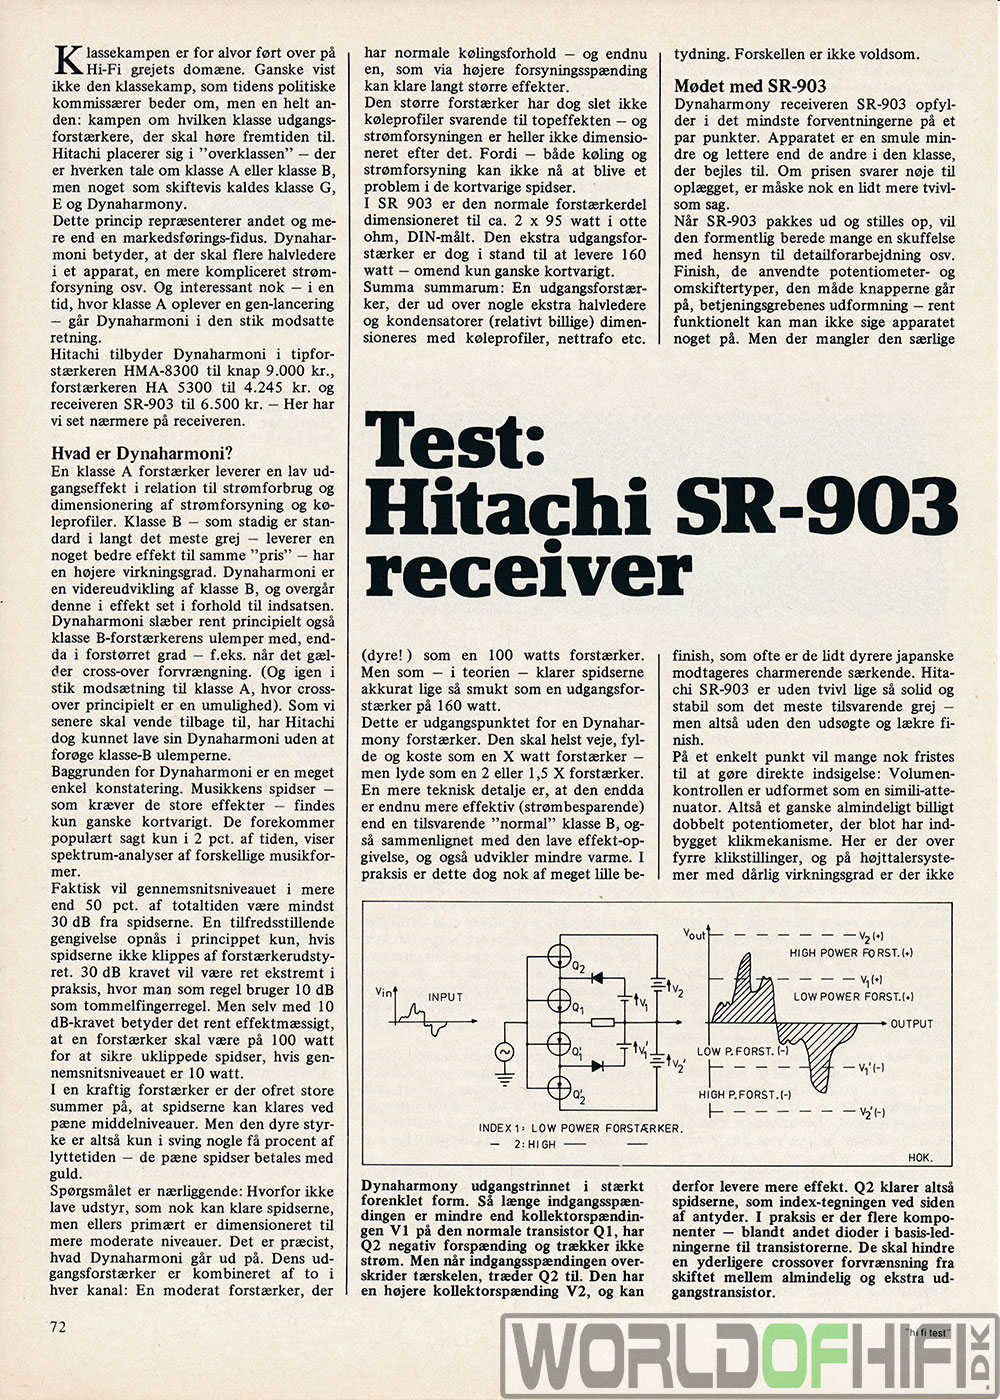 Hi-Fi Test, 79, 72, Receivere, , Hitachi SR-903